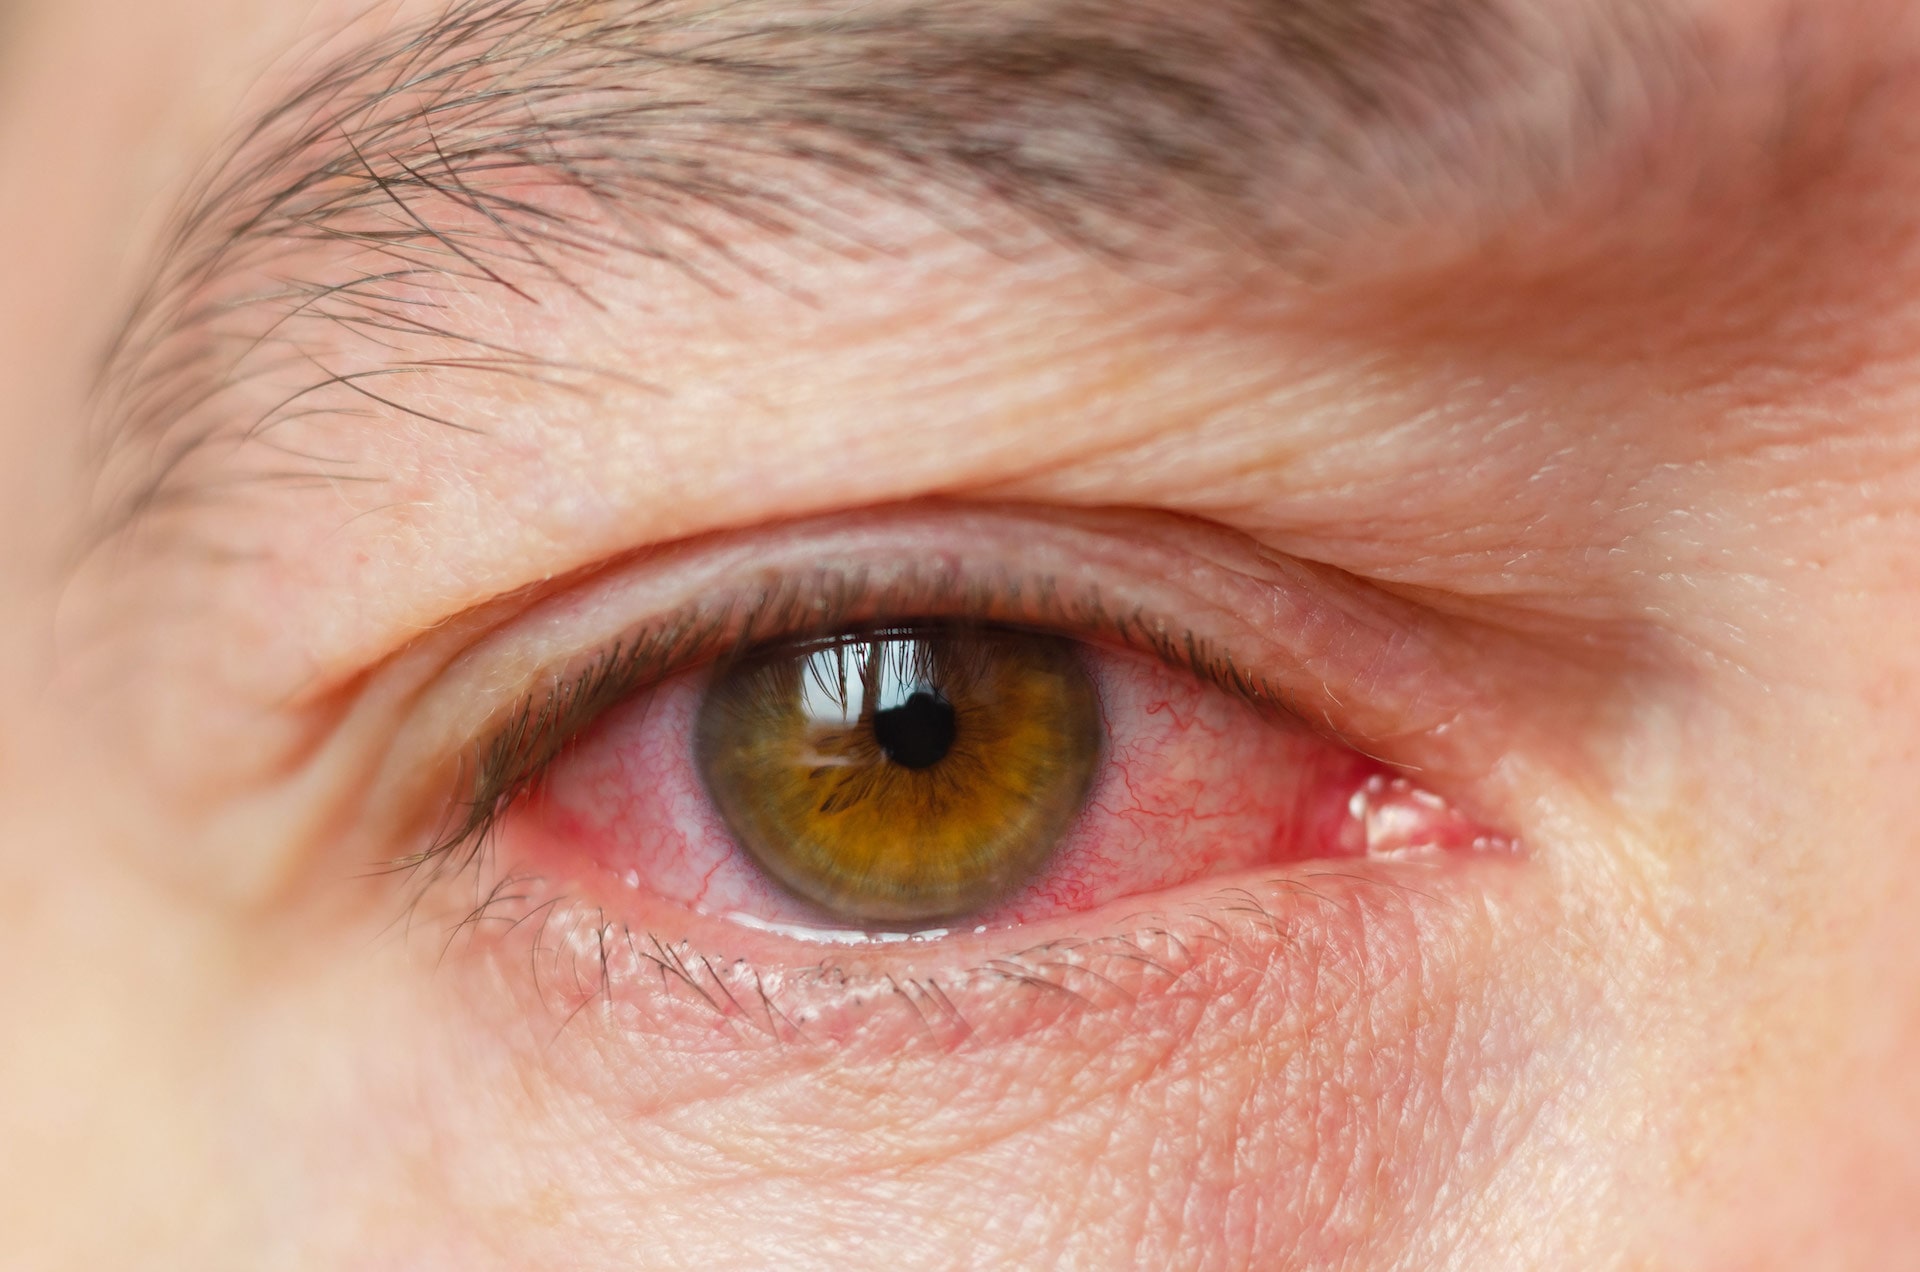 close up image of a bloodshot eye